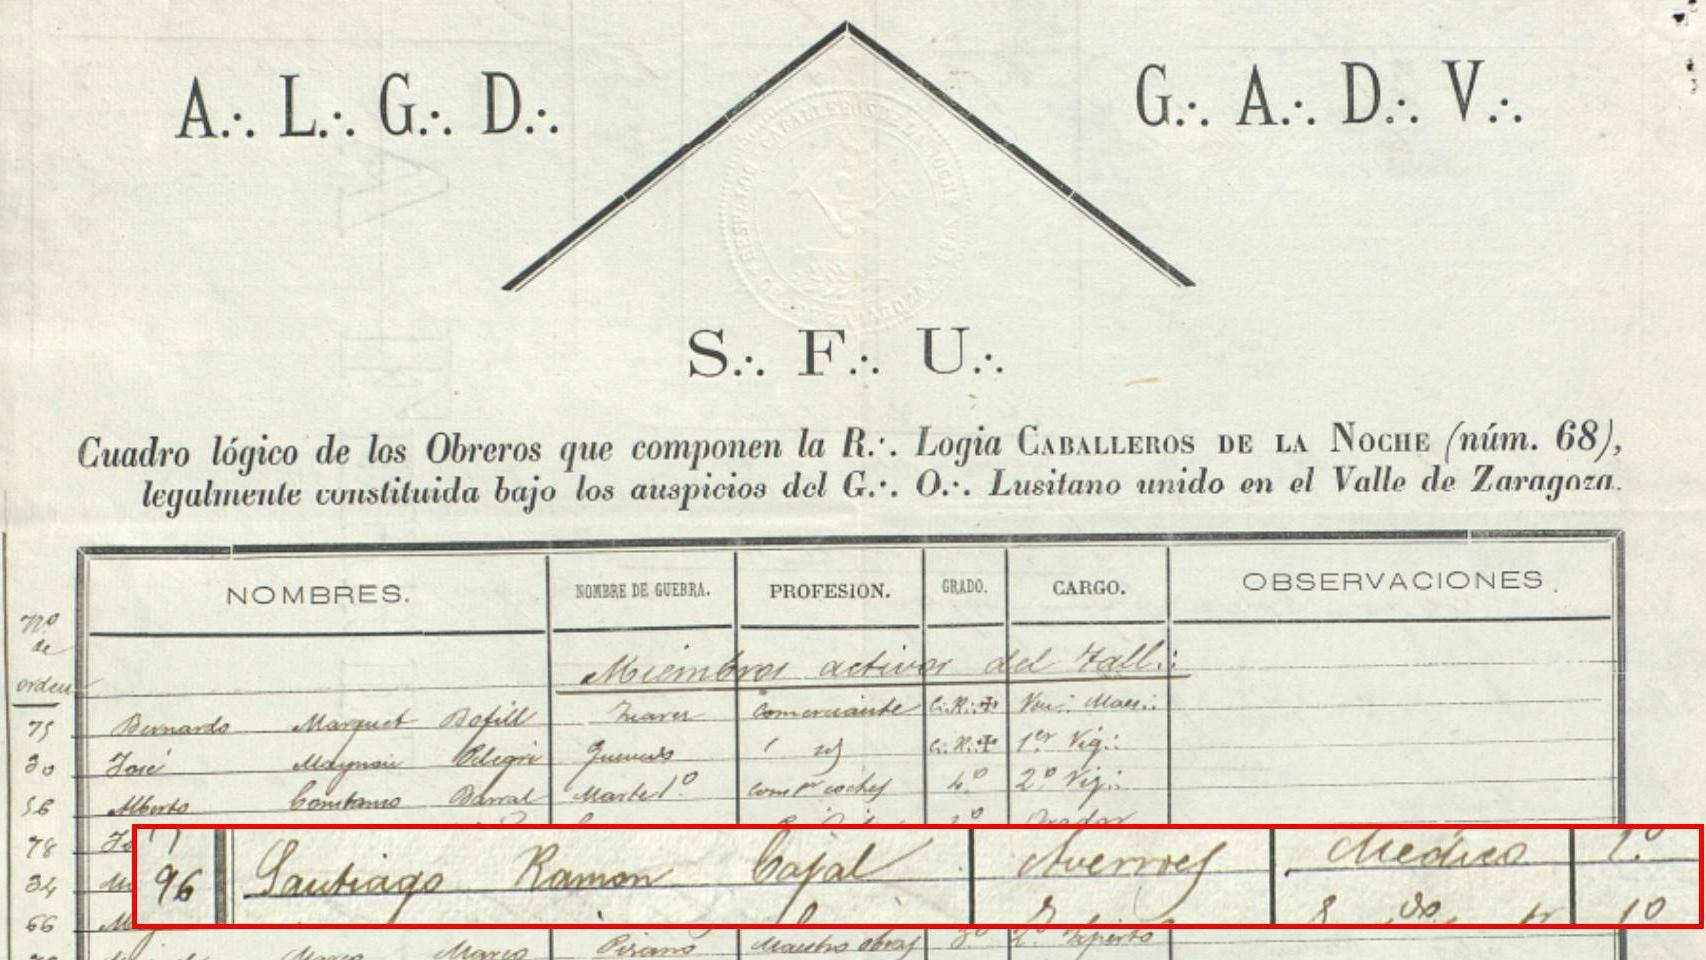 El nombre de Ramón y Cajal en el cuadro de la Logia Caballeros de la Noche.